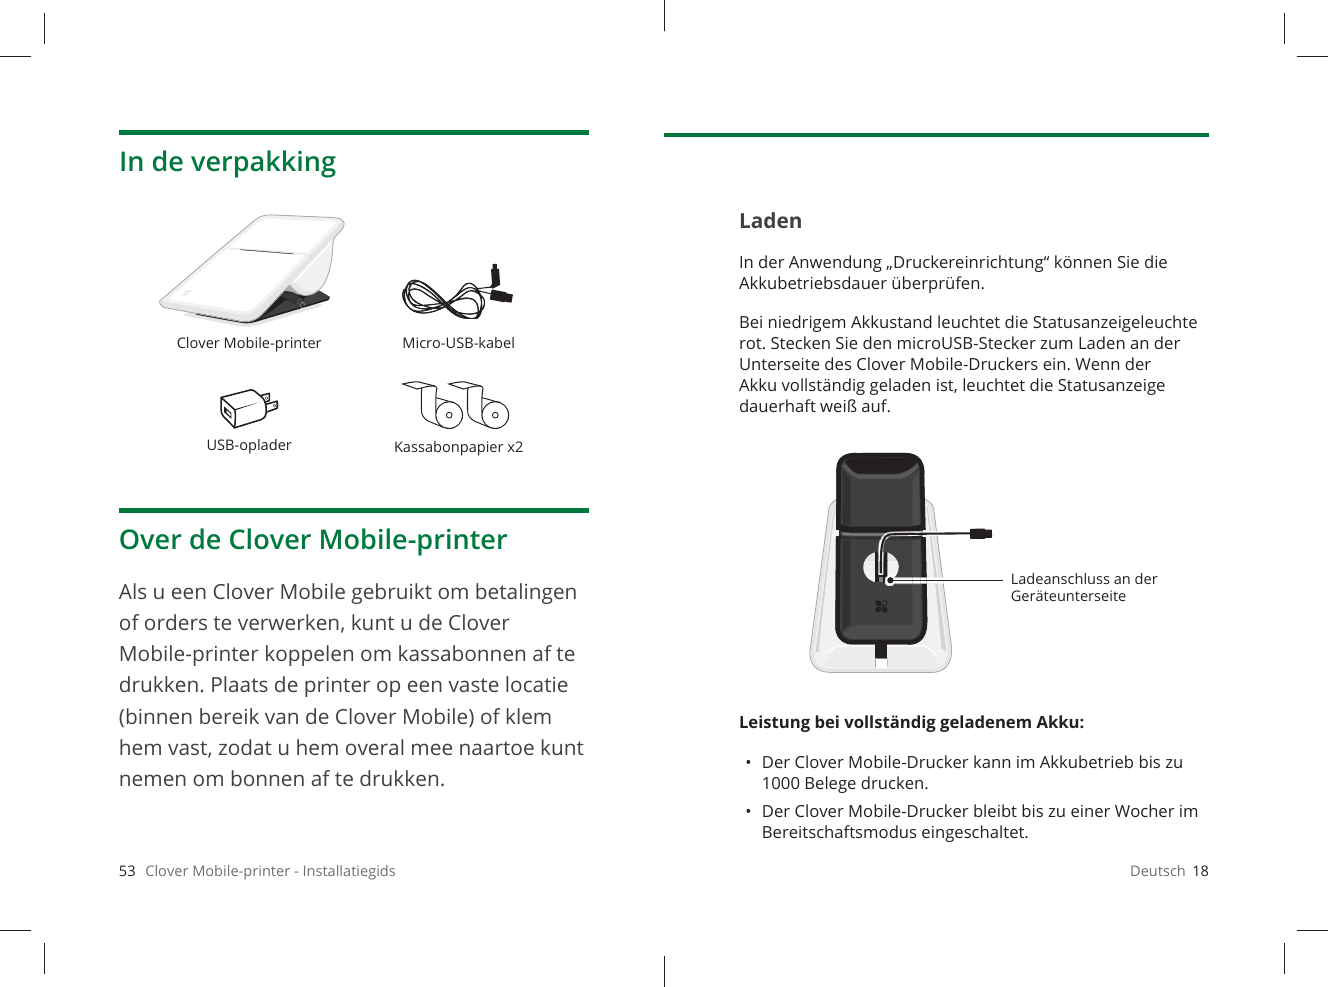 53   Clover Mobile-printer - InstallatiegidsIn de verpakkingOver de Clover Mobile-printerAls u een Clover Mobile gebruikt om betalingen of orders te verwerken, kunt u de Clover Mobile-printer koppelen om kassabonnen af te drukken. Plaats de printer op een vaste locatie (binnen bereik van de Clover Mobile) of klem hem vast, zodat u hem overal mee naartoe kunt nemen om bonnen af te drukken.Clover Mobile-printer Micro-USB-kabelUSB-oplader Kassabonpapier x2Deutsch  18LadenIn der Anwendung „Druckereinrichtung“ können Sie die Akkubetriebsdauer überprüfen. Bei niedrigem Akkustand leuchtet die Statusanzeigeleuchte rot. Stecken Sie den microUSB-Stecker zum Laden an der Unterseite des Clover Mobile-Druckers ein. Wenn der Akku vollständig geladen ist, leuchtet die Statusanzeige dauerhaft weiß auf.Leistung bei vollständig geladenem Akku: •  Der Clover Mobile-Drucker kann im Akkubetrieb bis zu 1000Belege drucken.•  Der Clover Mobile-Drucker bleibt bis zu einer Wocher im Bereitschaftsmodus eingeschaltet.Ladeanschluss an der Geräteunterseite